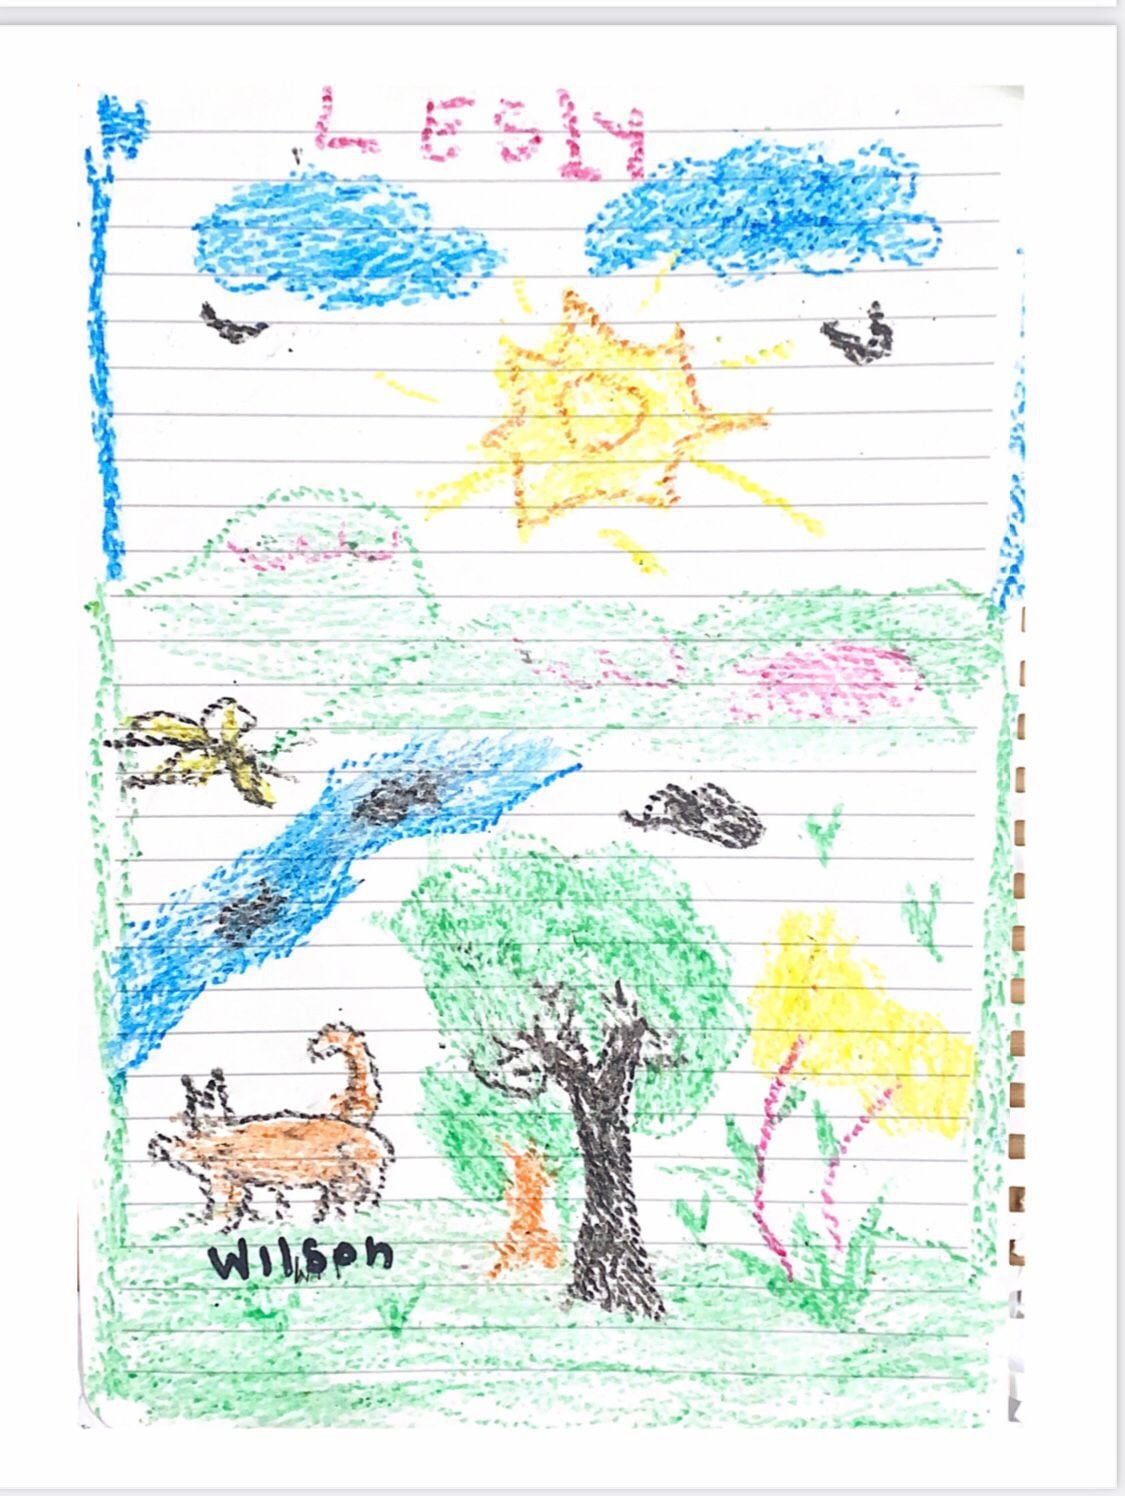 Niñas rescatadas de las selvas del Guaviare hicieron un dibujo para el Guía canino y amigo de Wilson, el perrito que permanece extraviado.